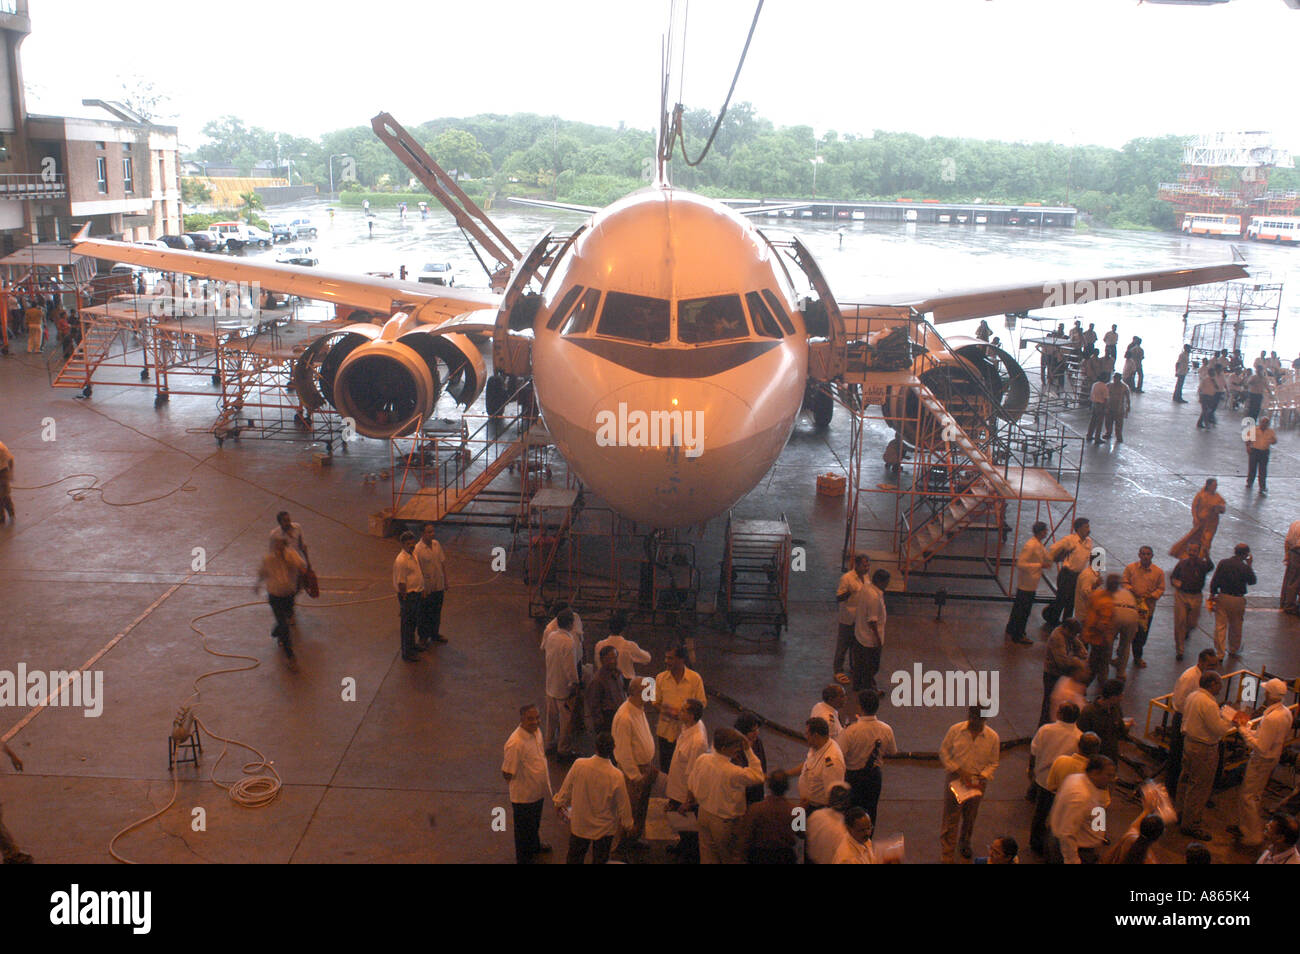 Atelier à l'aéroport Compagnies aériennes indiennes Bombay Mumbai Inde Santacruz Banque D'Images